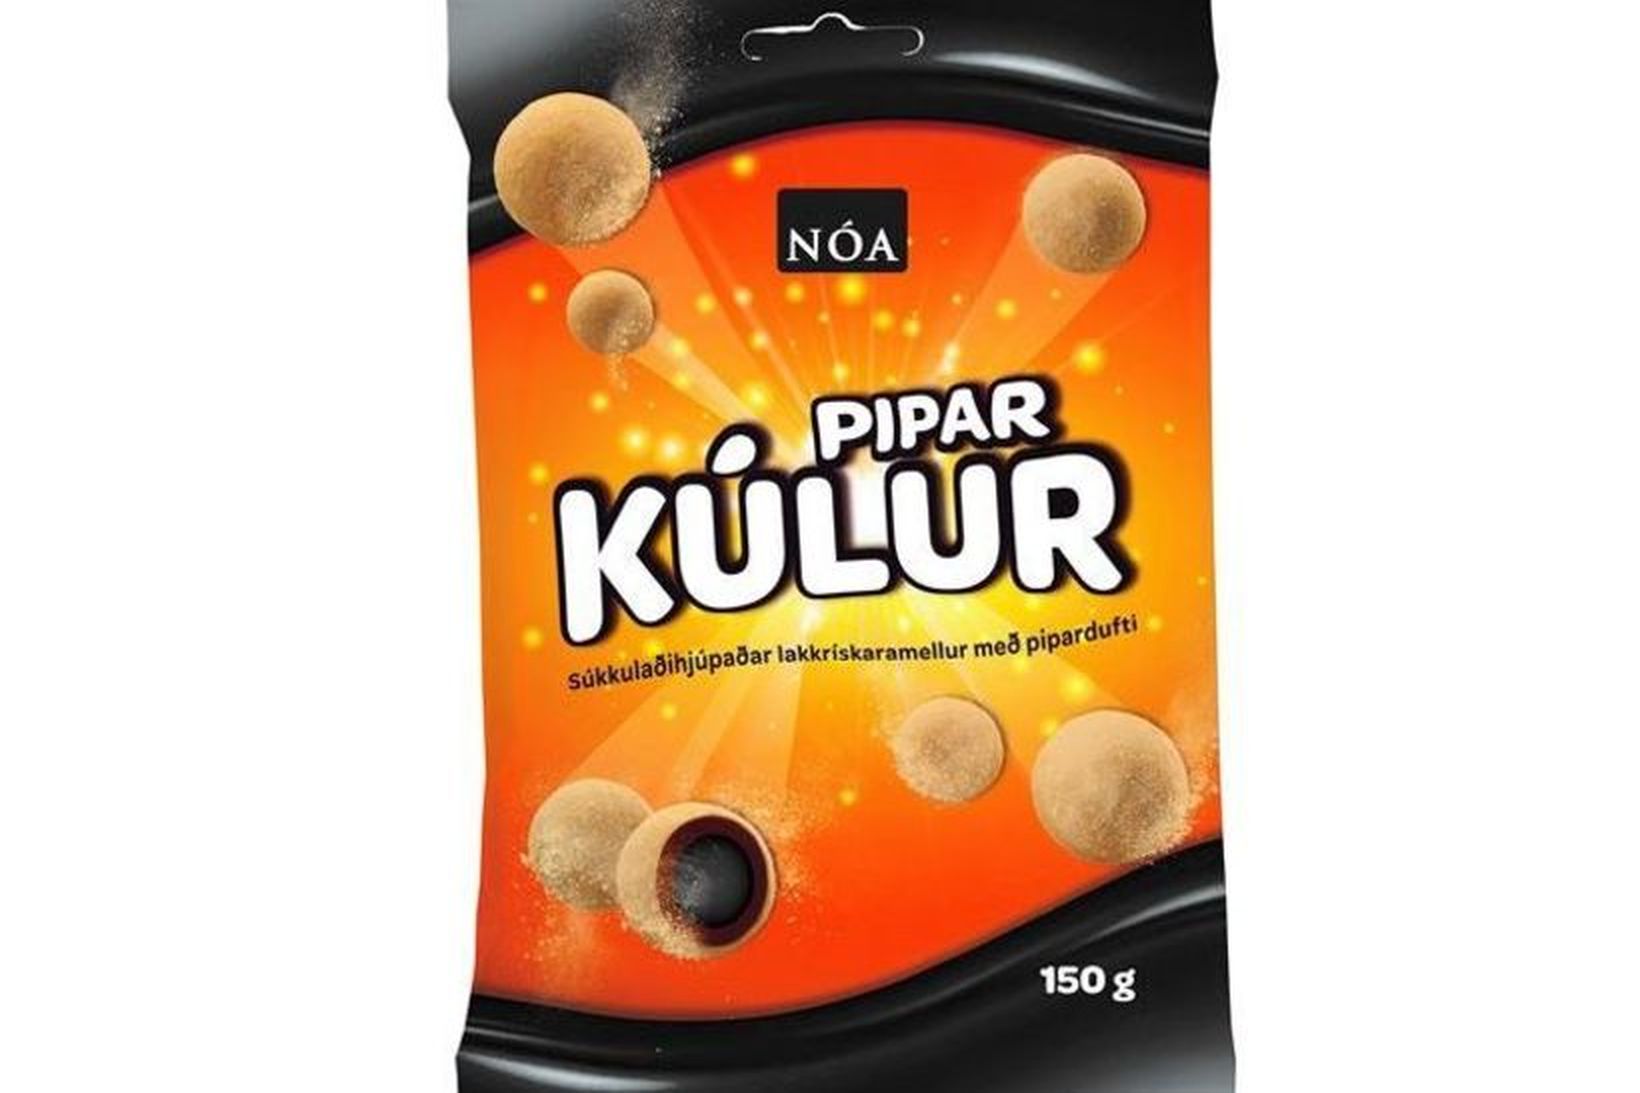 Nóa piparkúlur – súkkulaðihjúpaðar lakkrískaramellur með pipardufti.